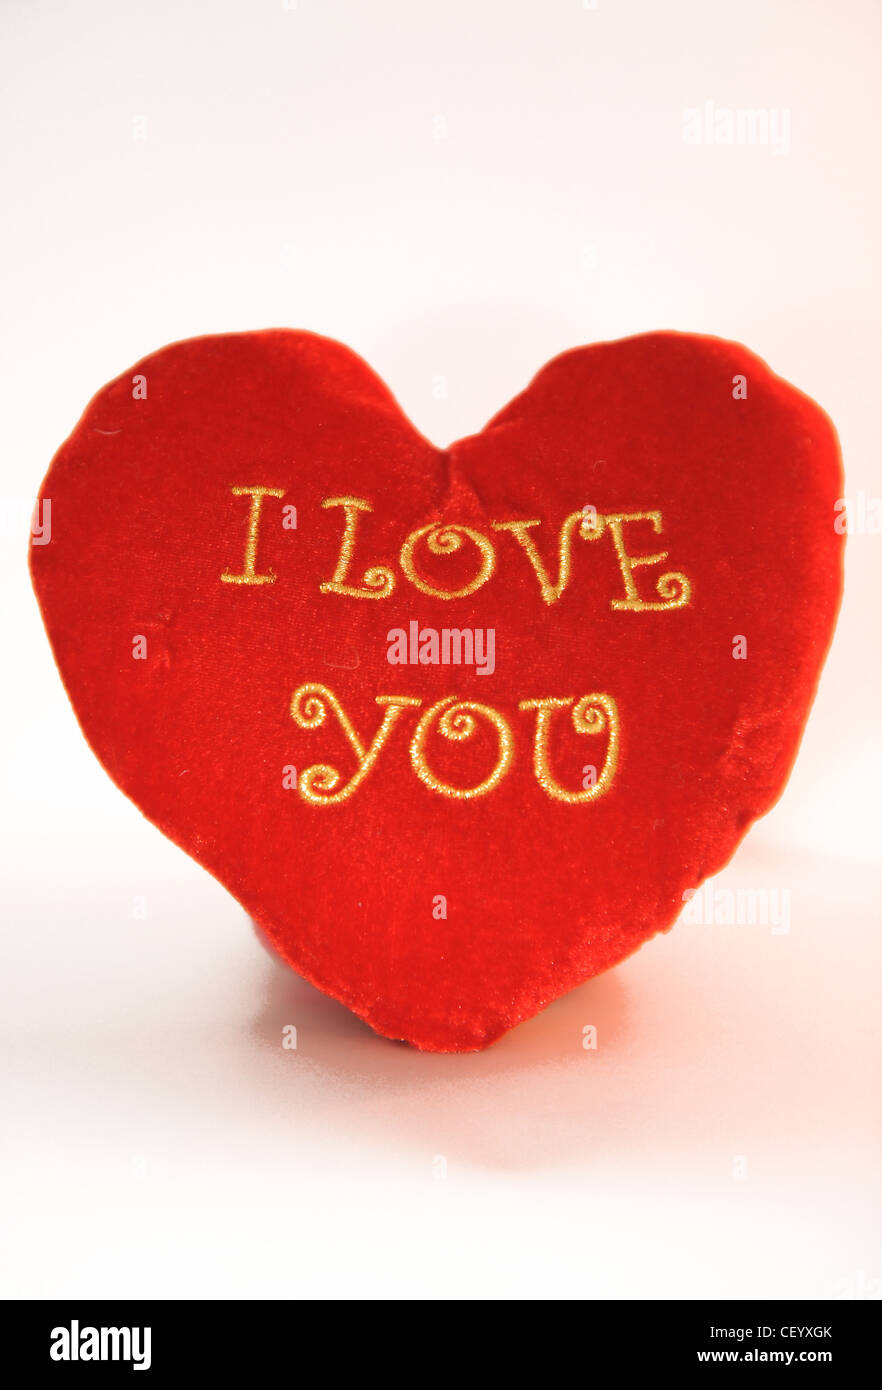 Stillleben-Bild von einem roten Herz geformt Kissen mit I Love You drauf geschrieben Stockfoto